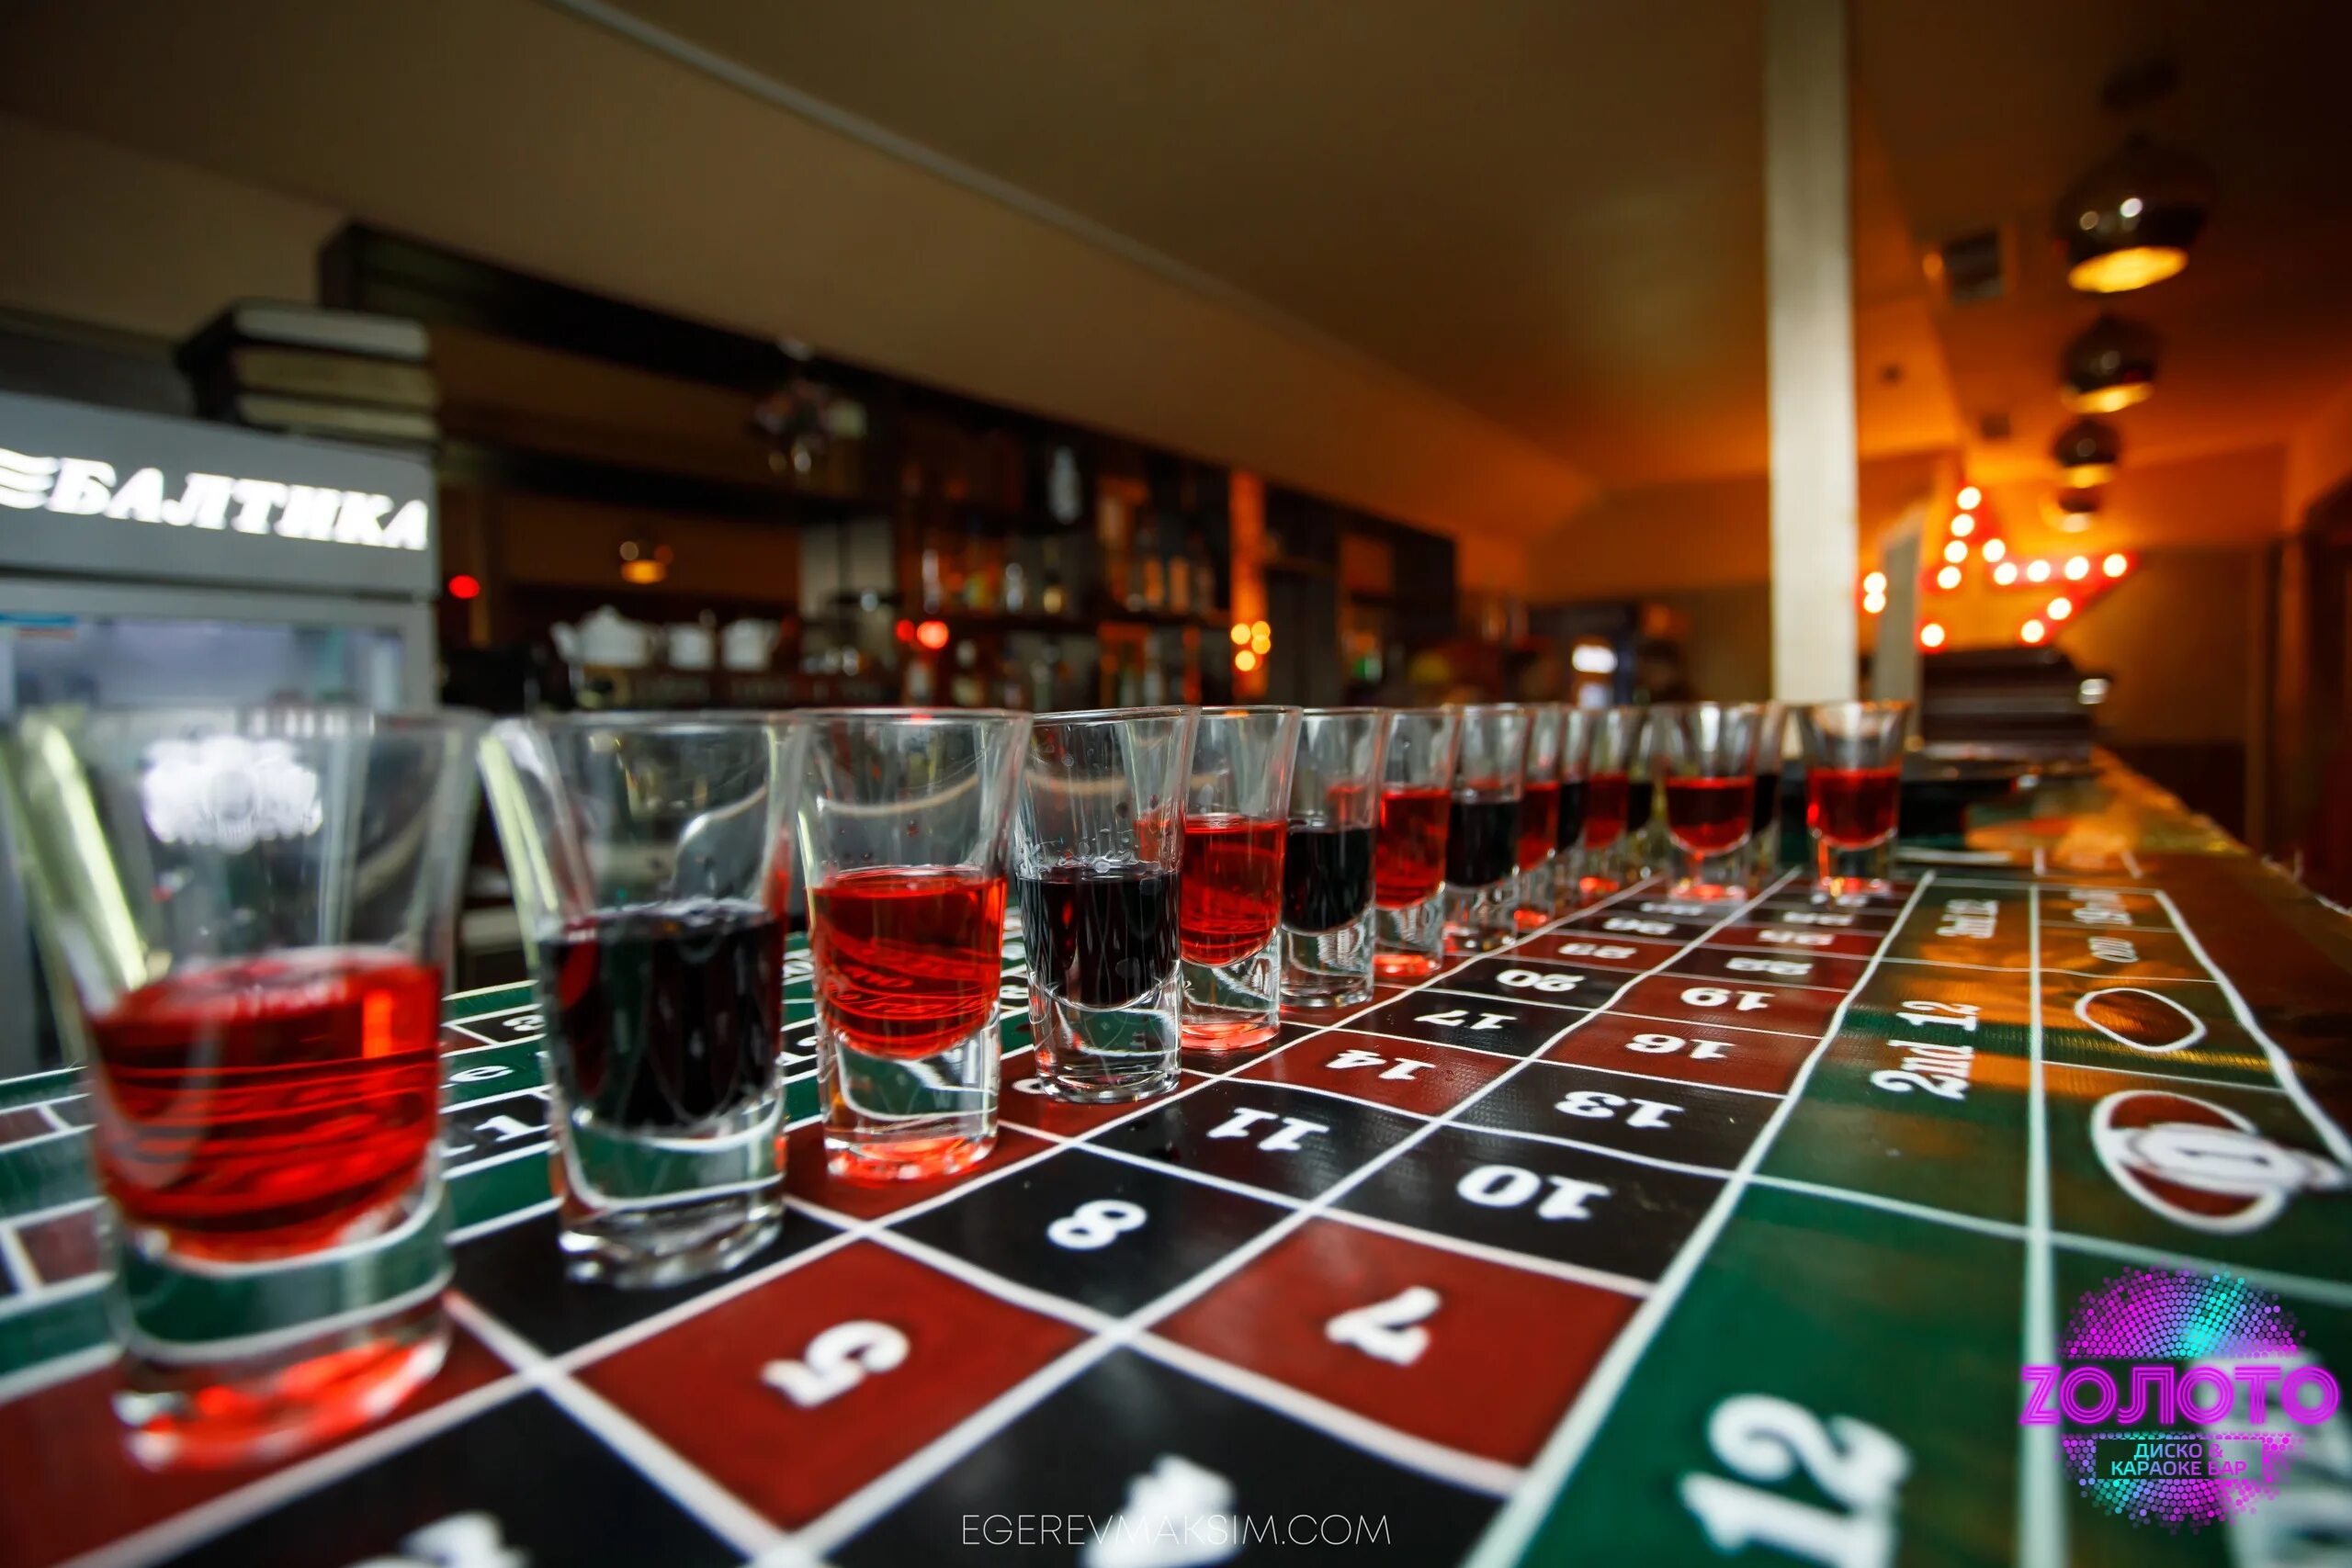 Сайт unlim casino unlimcassino1. Виски казино. Казино напиток. Алкогольное казино. Винное казино в барах.